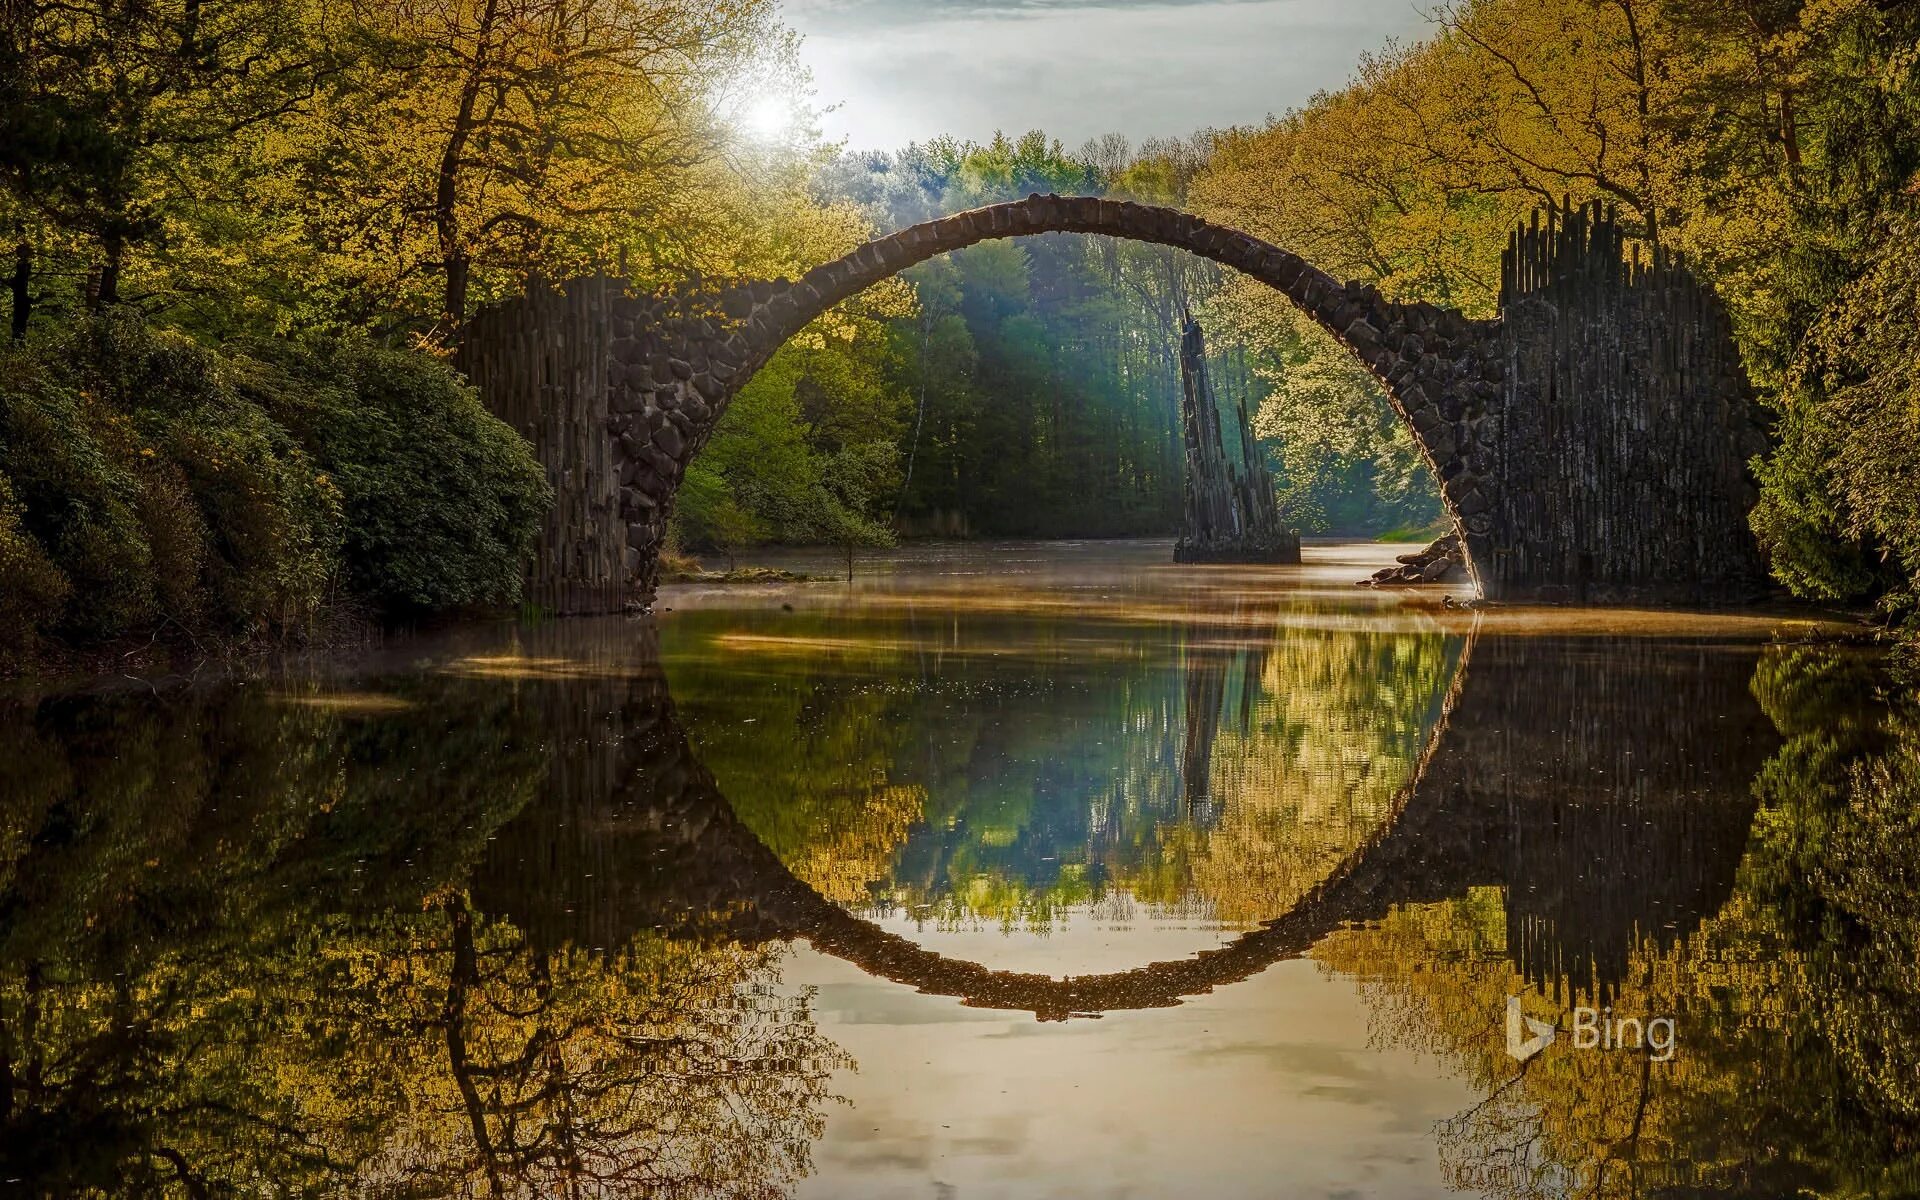 Пейзаж места. Мост Ракотцбрюке Германия. Чертов мост Ракотцбрюке, Германия. Парк Кромлау Германия. Мост Ракоц, парк Кромлау, Германия.